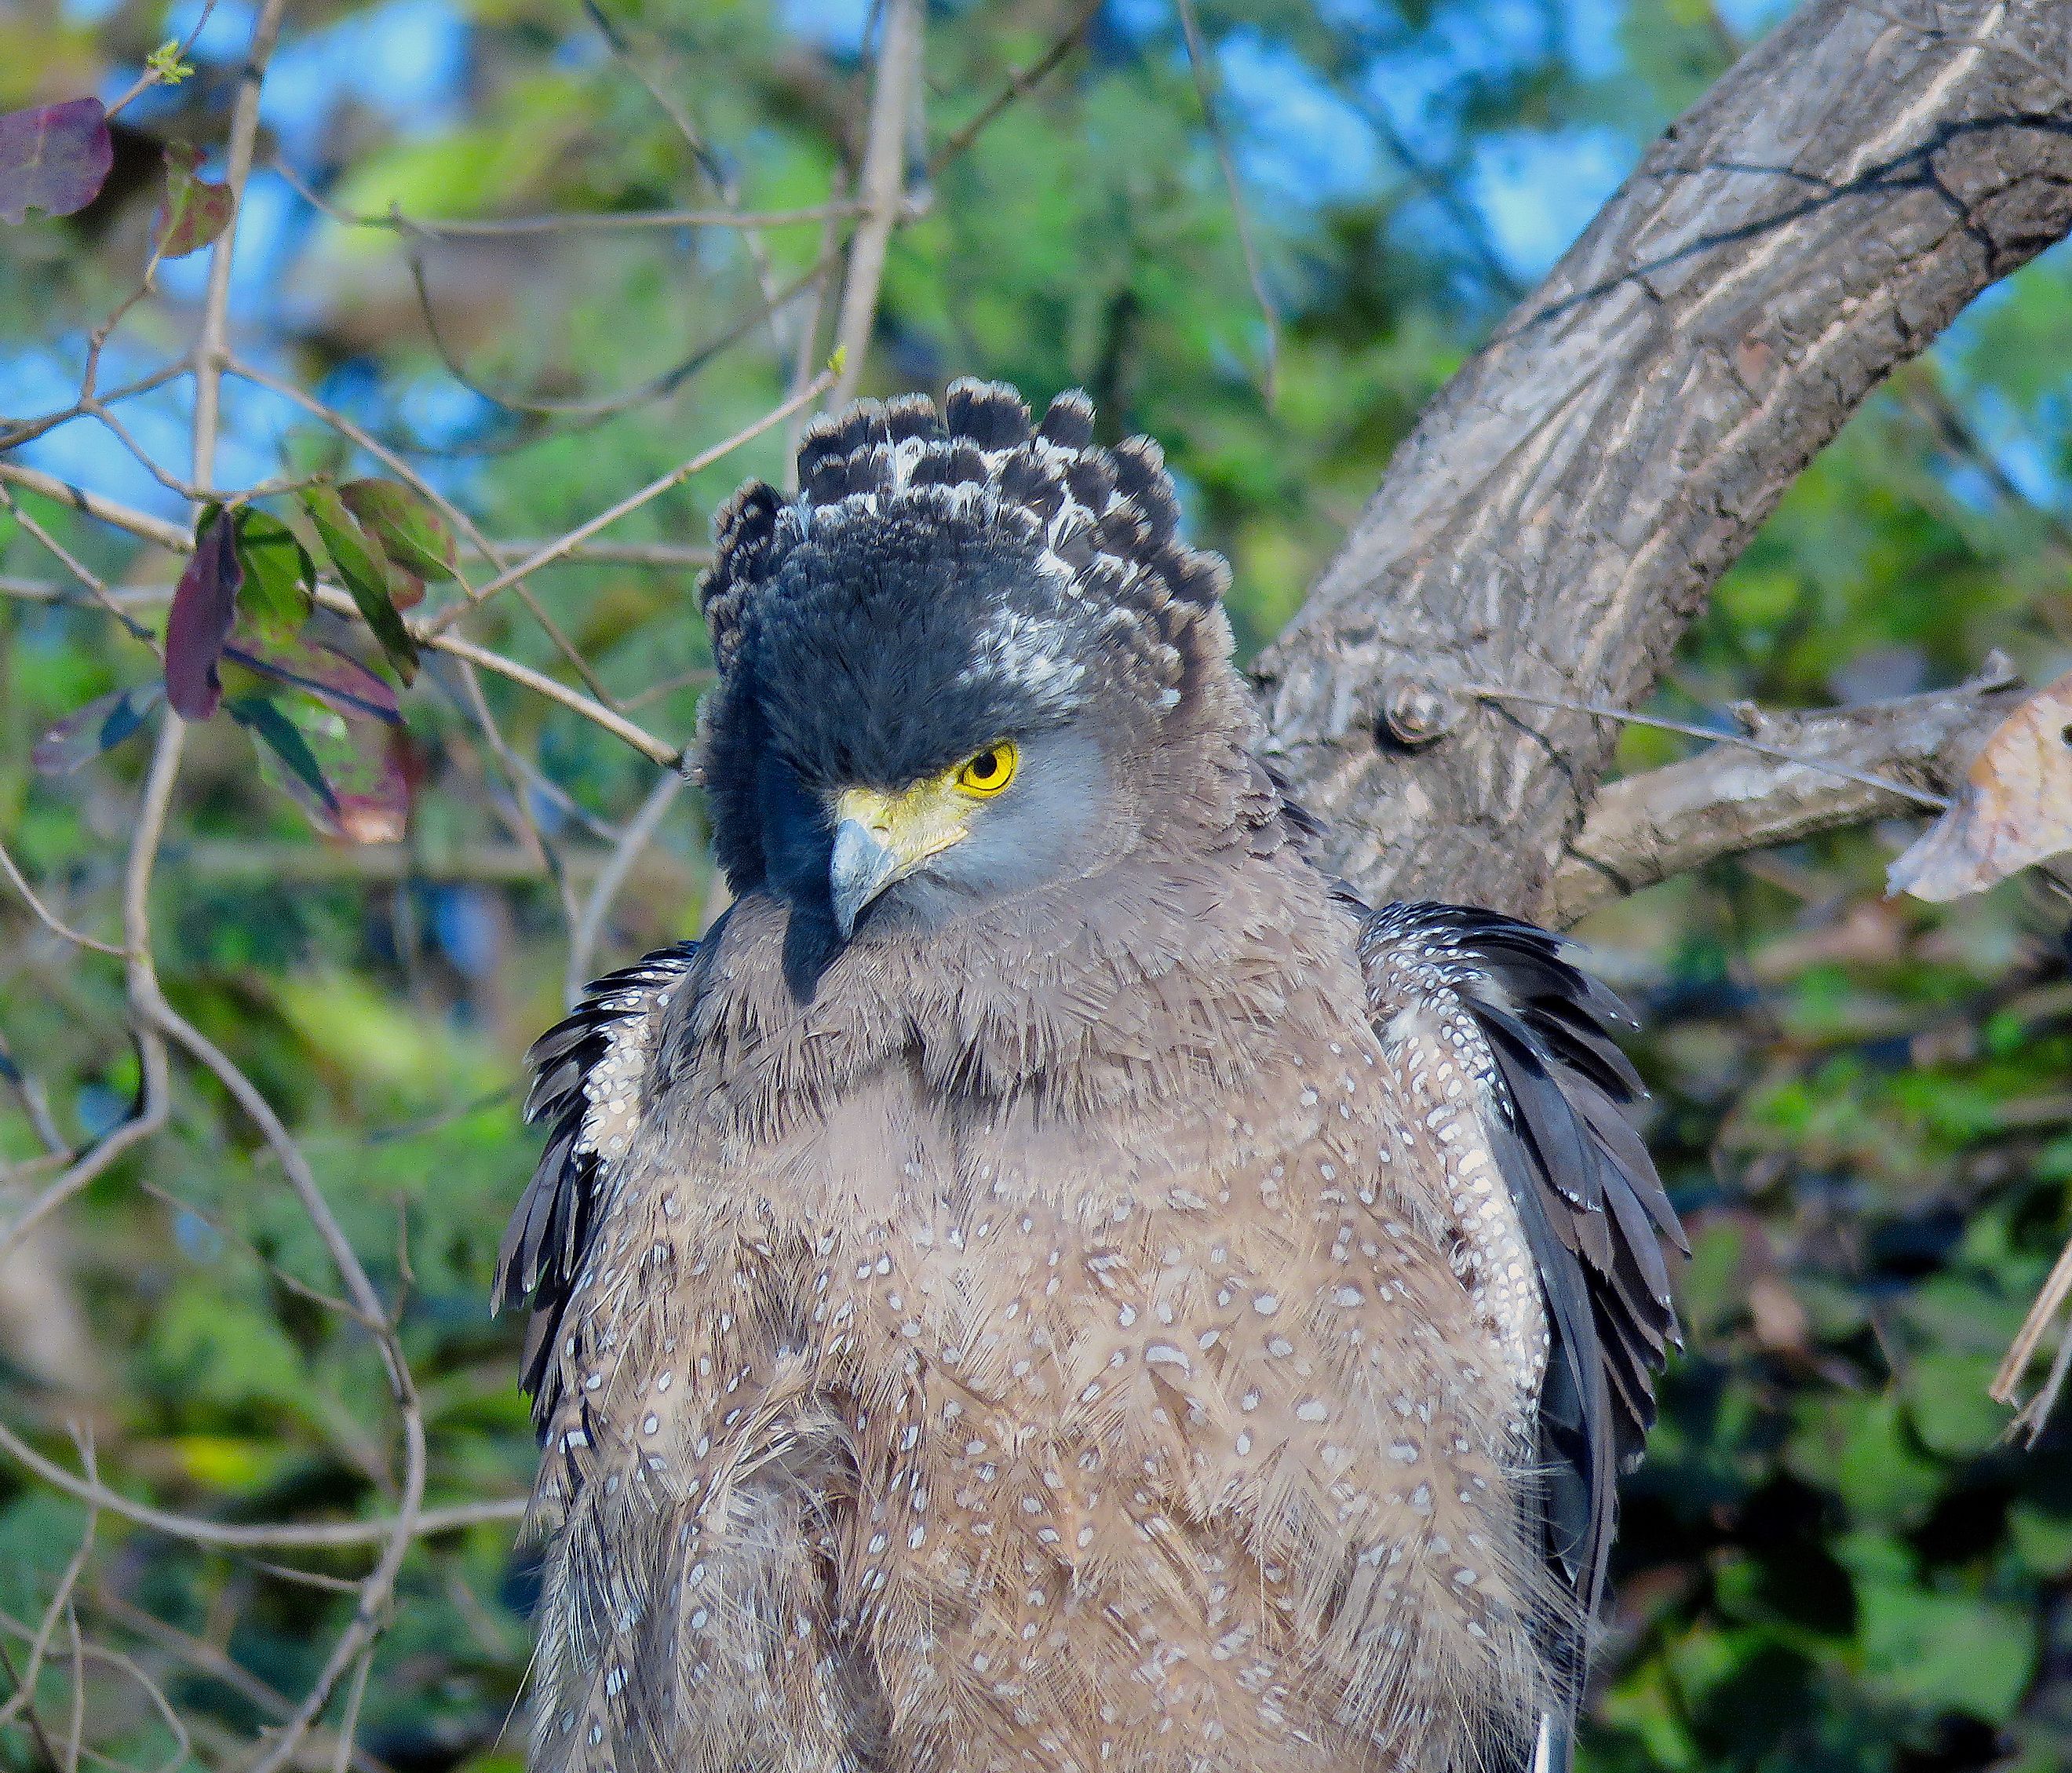 Crested serpent eagle. Image credit: Oishimaya Sen Nag